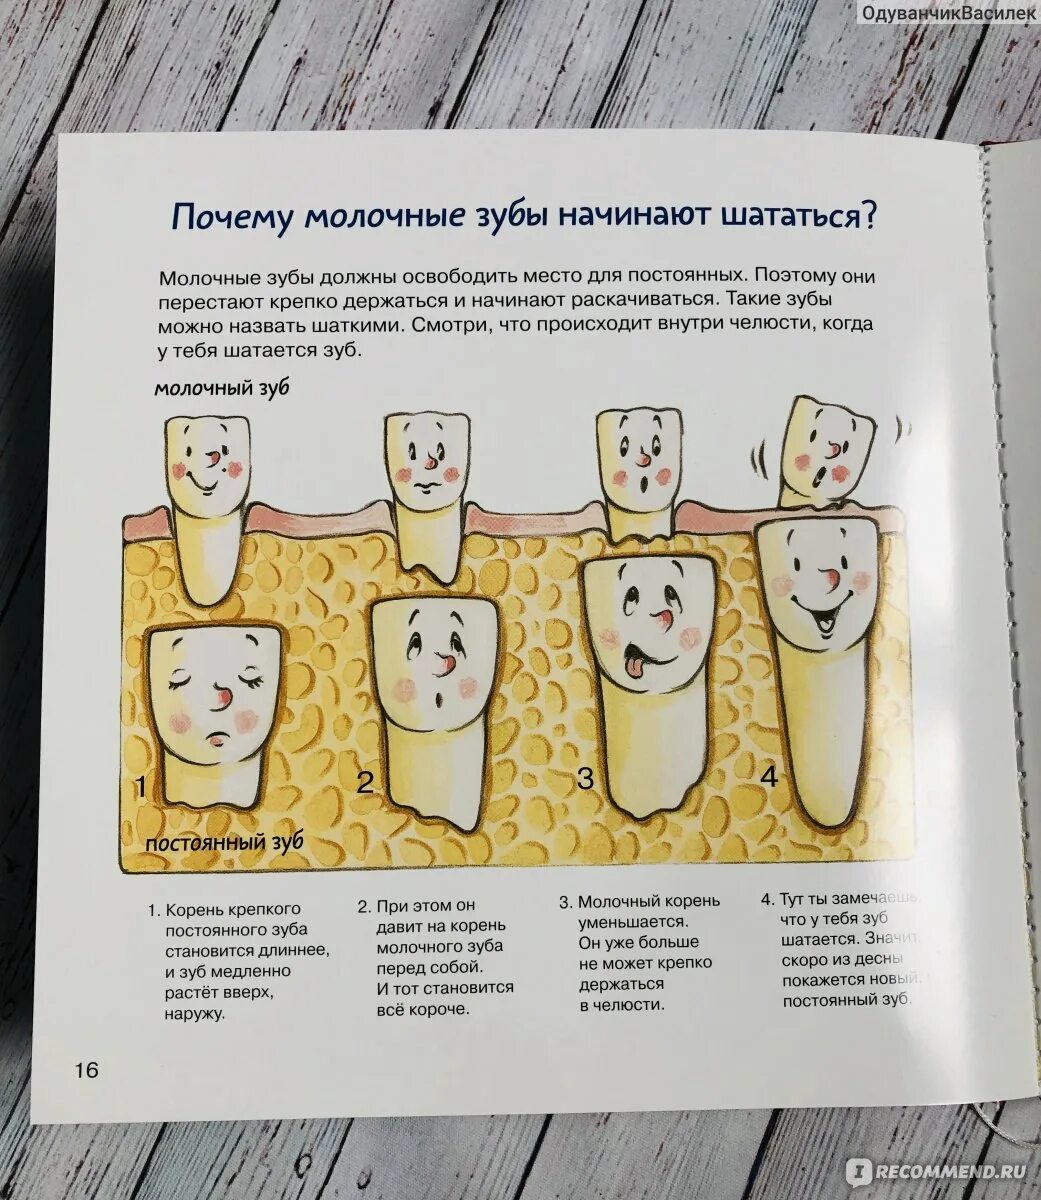 Как выглядят корни молочных зубов. Мифы о молочных зубах.